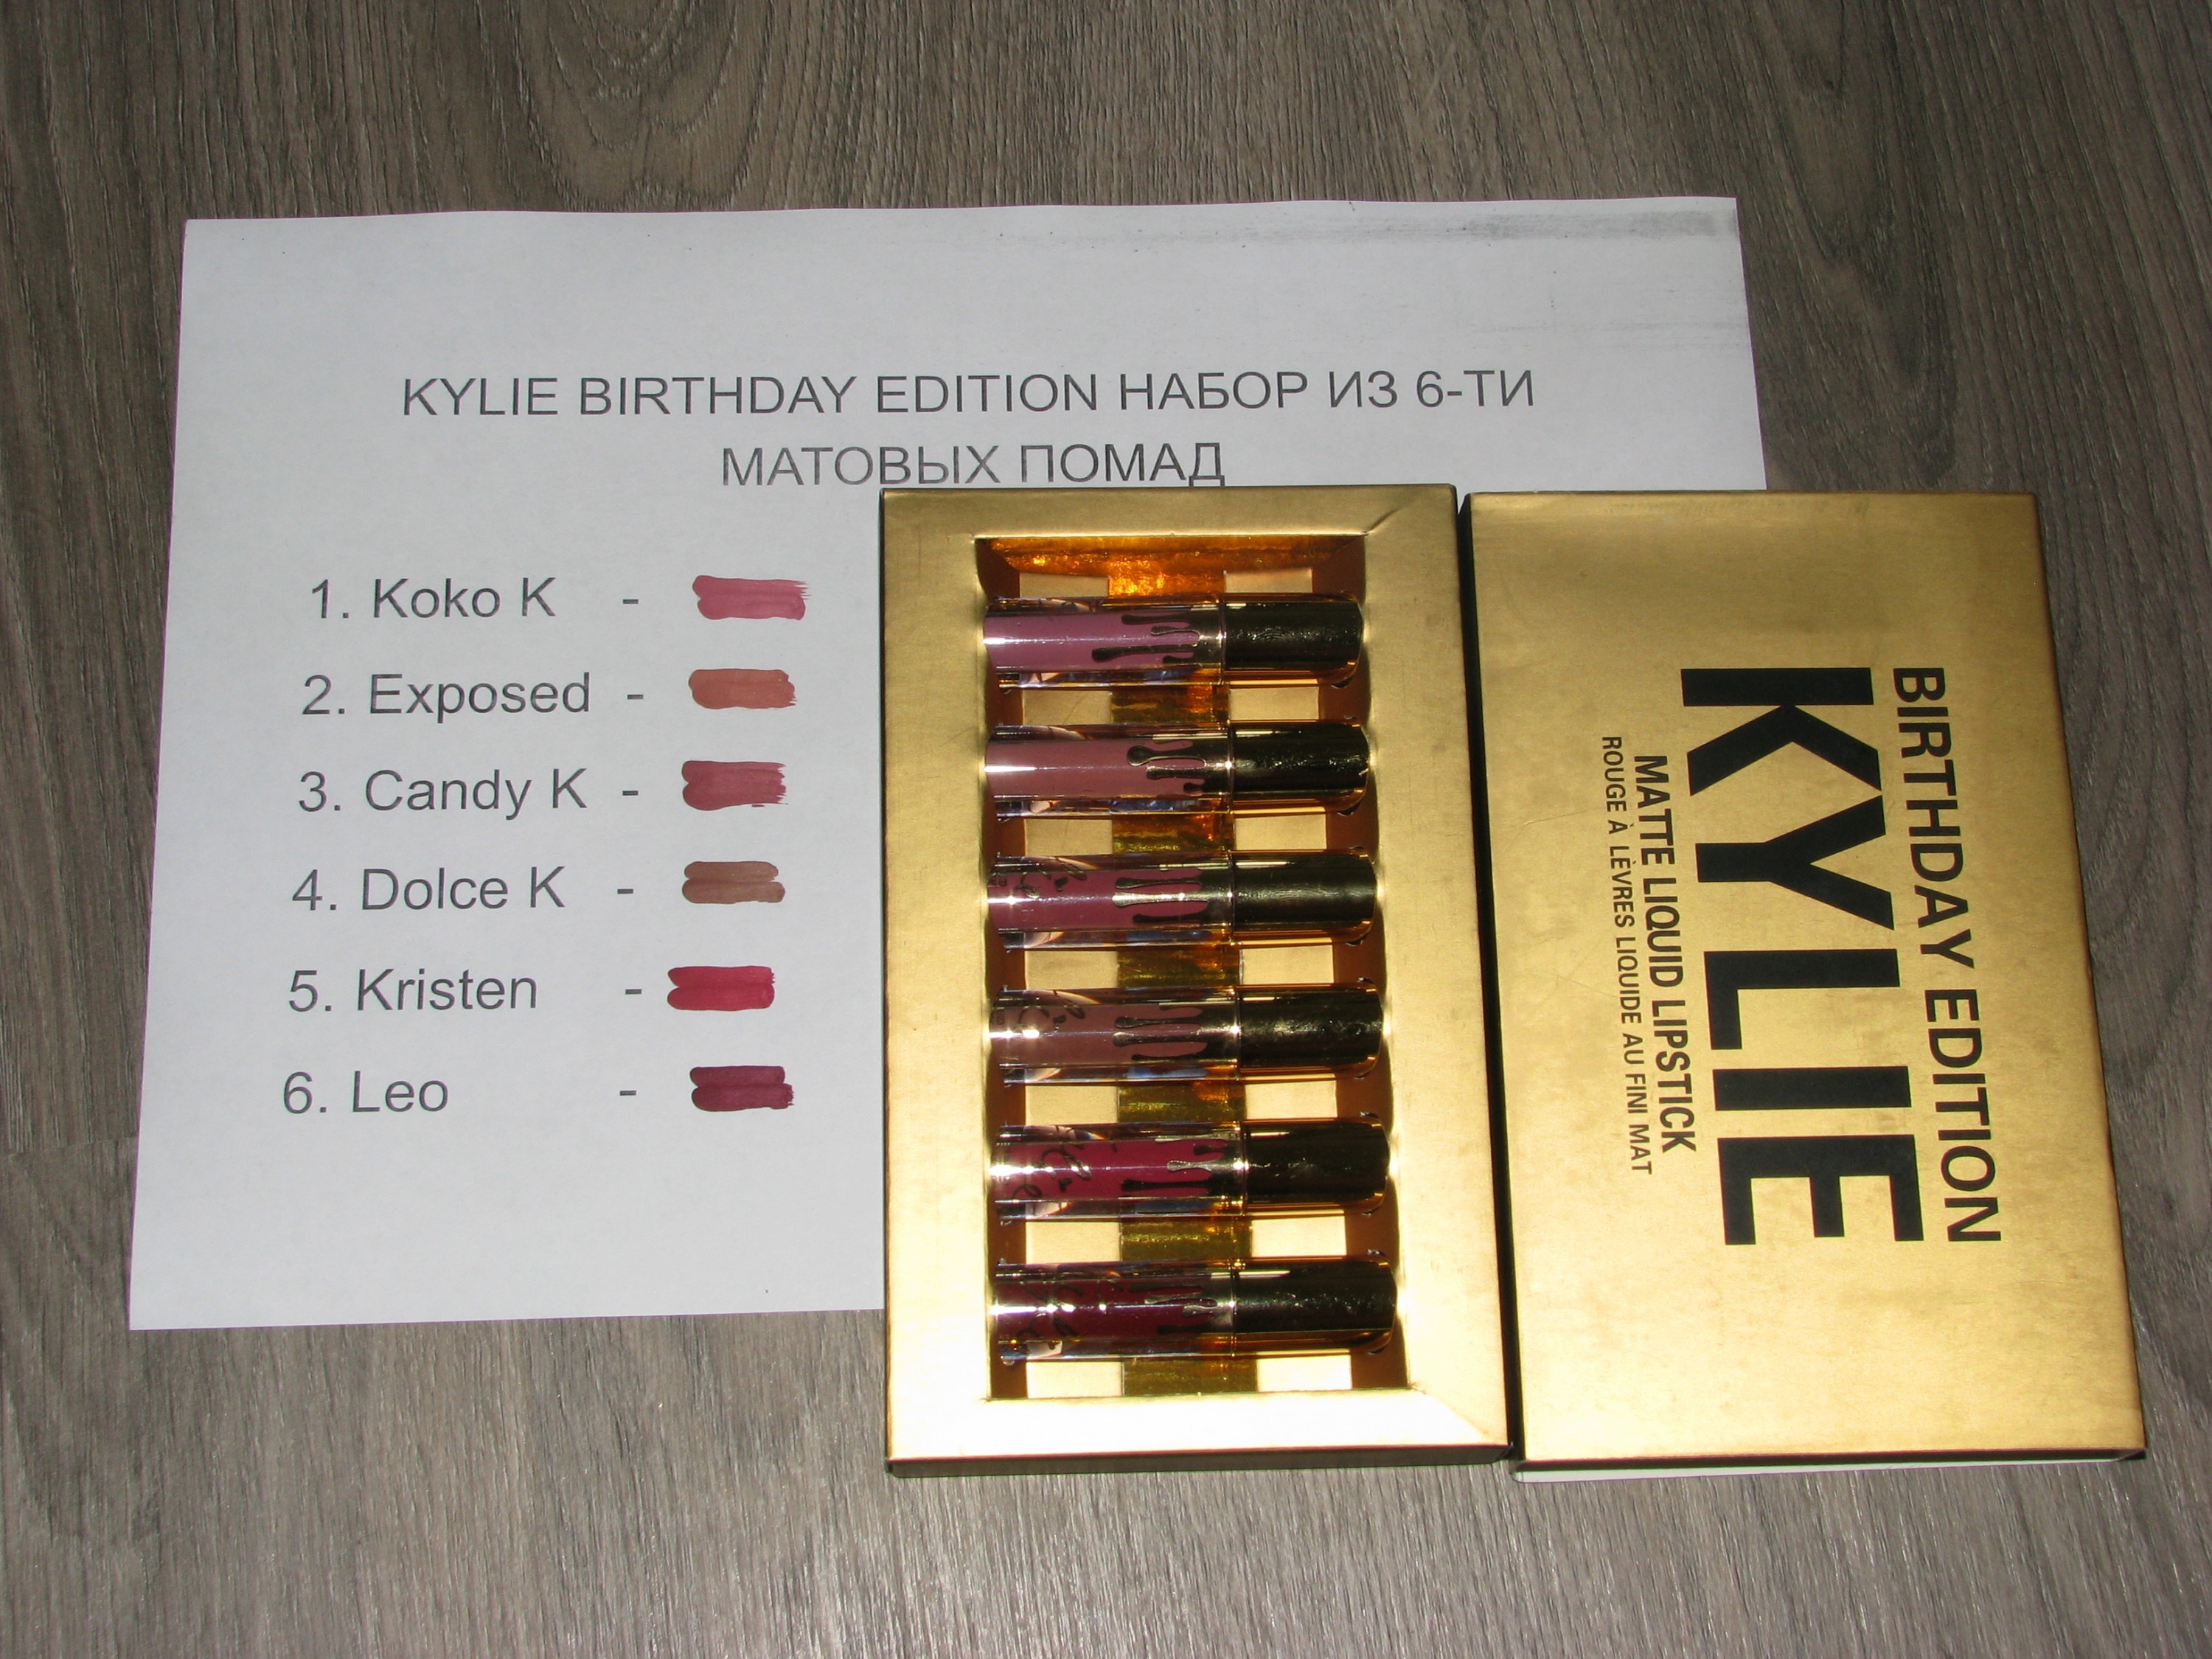 Обзор популярных наборов Kylie + swatch + реальное фото